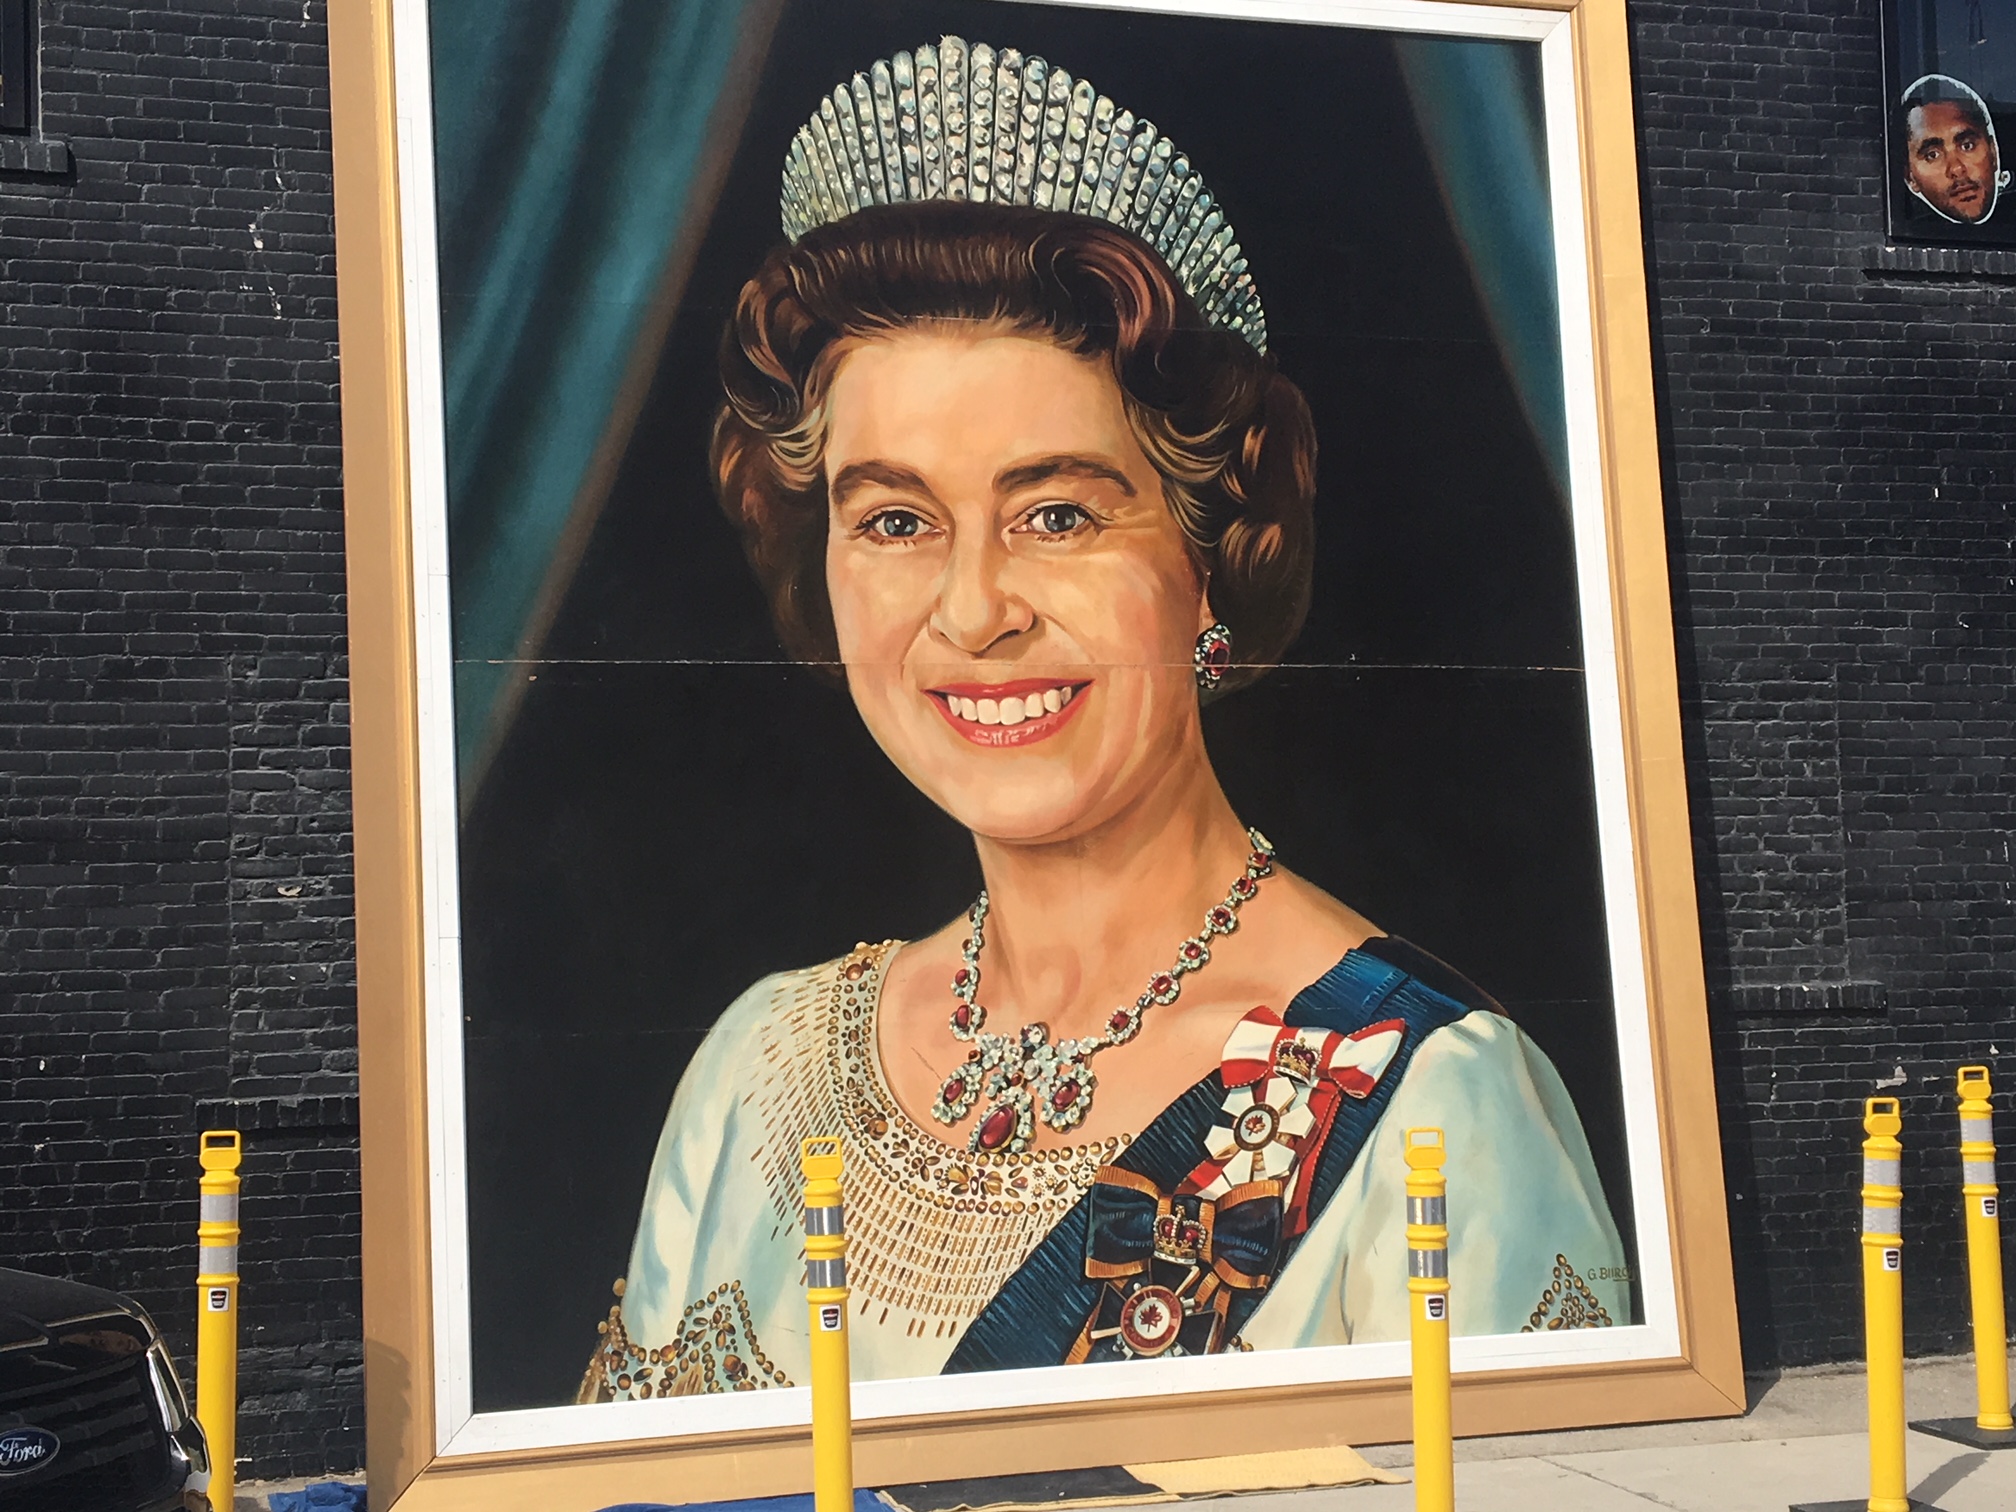 Ten większy niż życie portret królowej został wyciągnięty z ukrycia w pubie kufel na Garry Street Wednesday w czasie Winnipeg Whiteout.